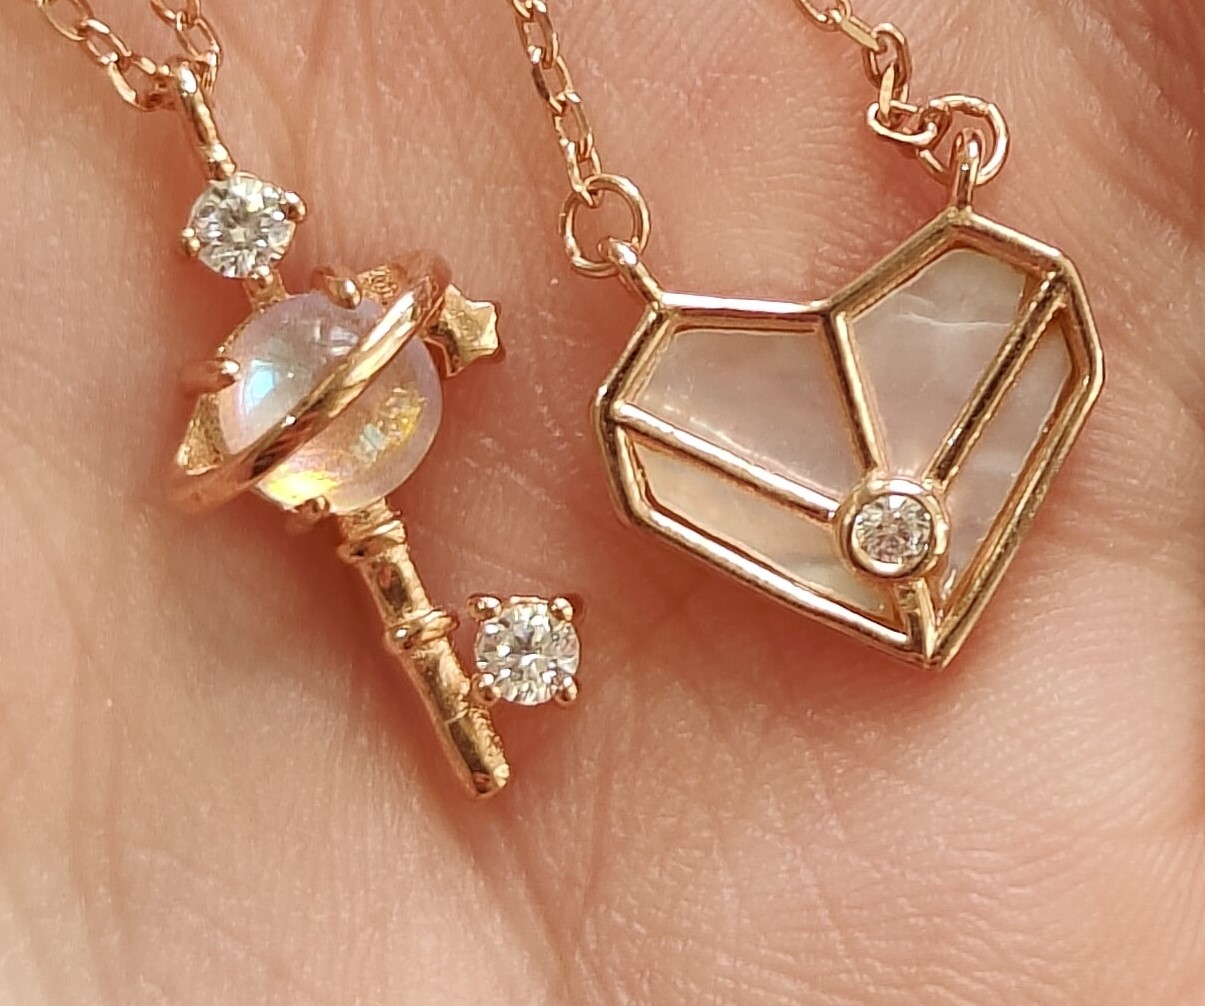 Fotografía de dos dijes de un collar uno en forma de corazon y otro en forma de paleta color dorados con diamantes cristalinos